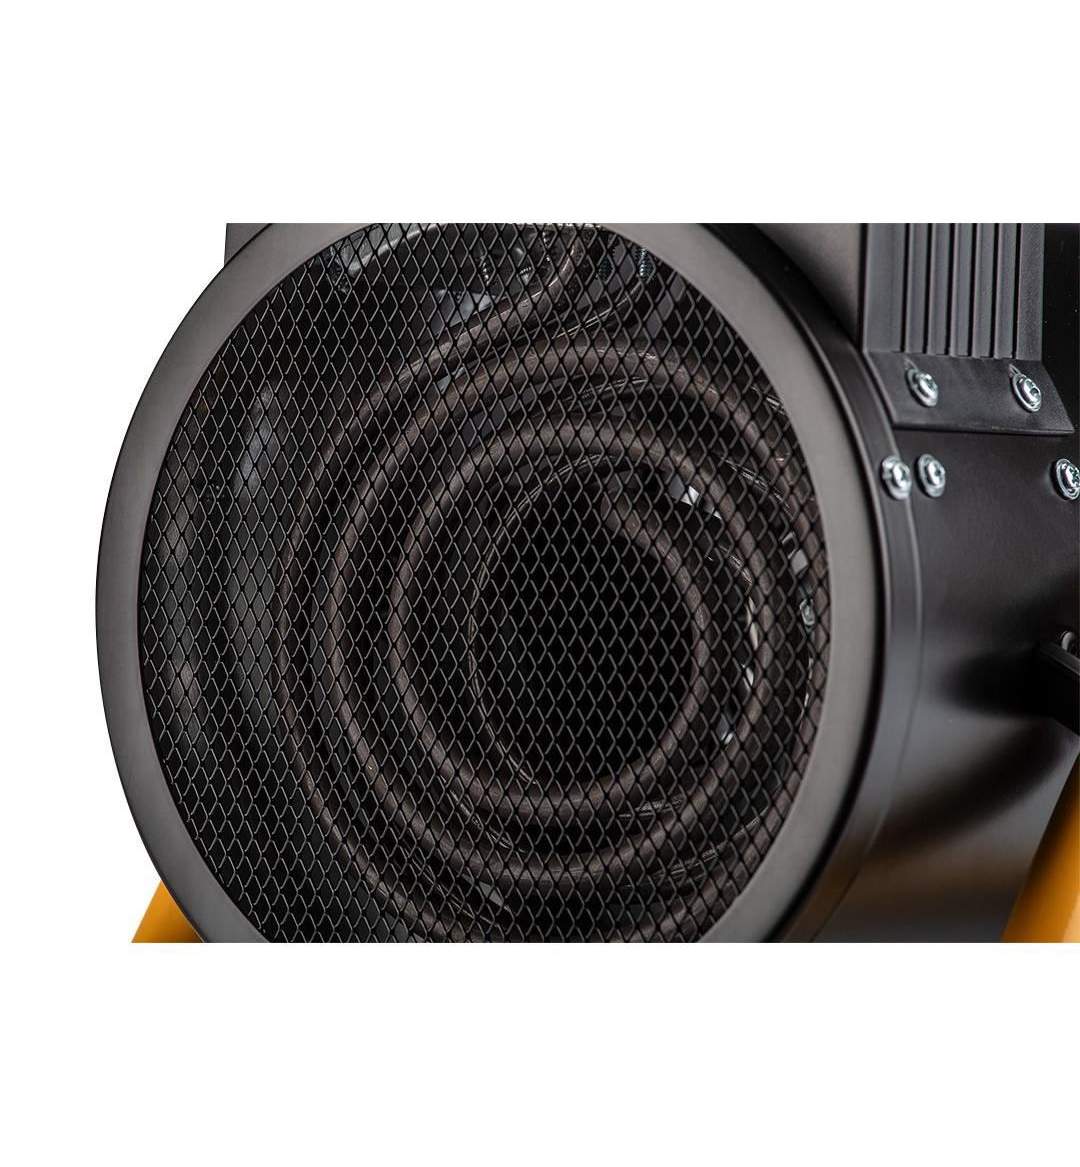 Terrible Cut off sound Incalzitor electric ceramic cu maner Maltec, cu termostat, putere 2000w,  negru/galben - Maniamall